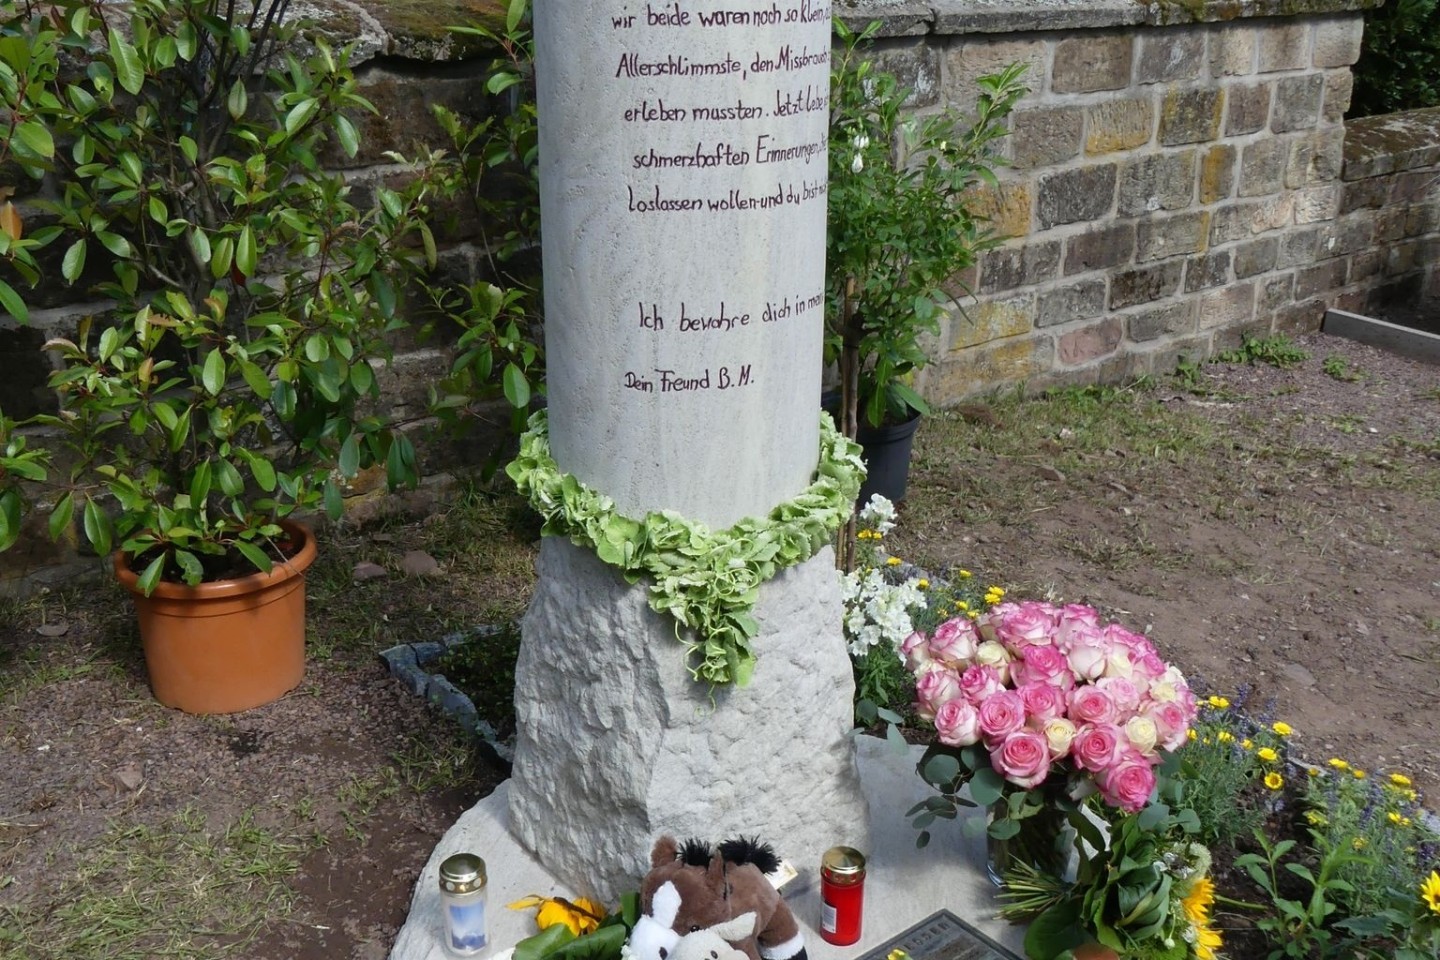 Eine Gedenkstele am Eingang des Friedhofs der katholischen Kirchengemeinde in Schwalbach erinnert an das ungeklärte Schicksal von Pascal.